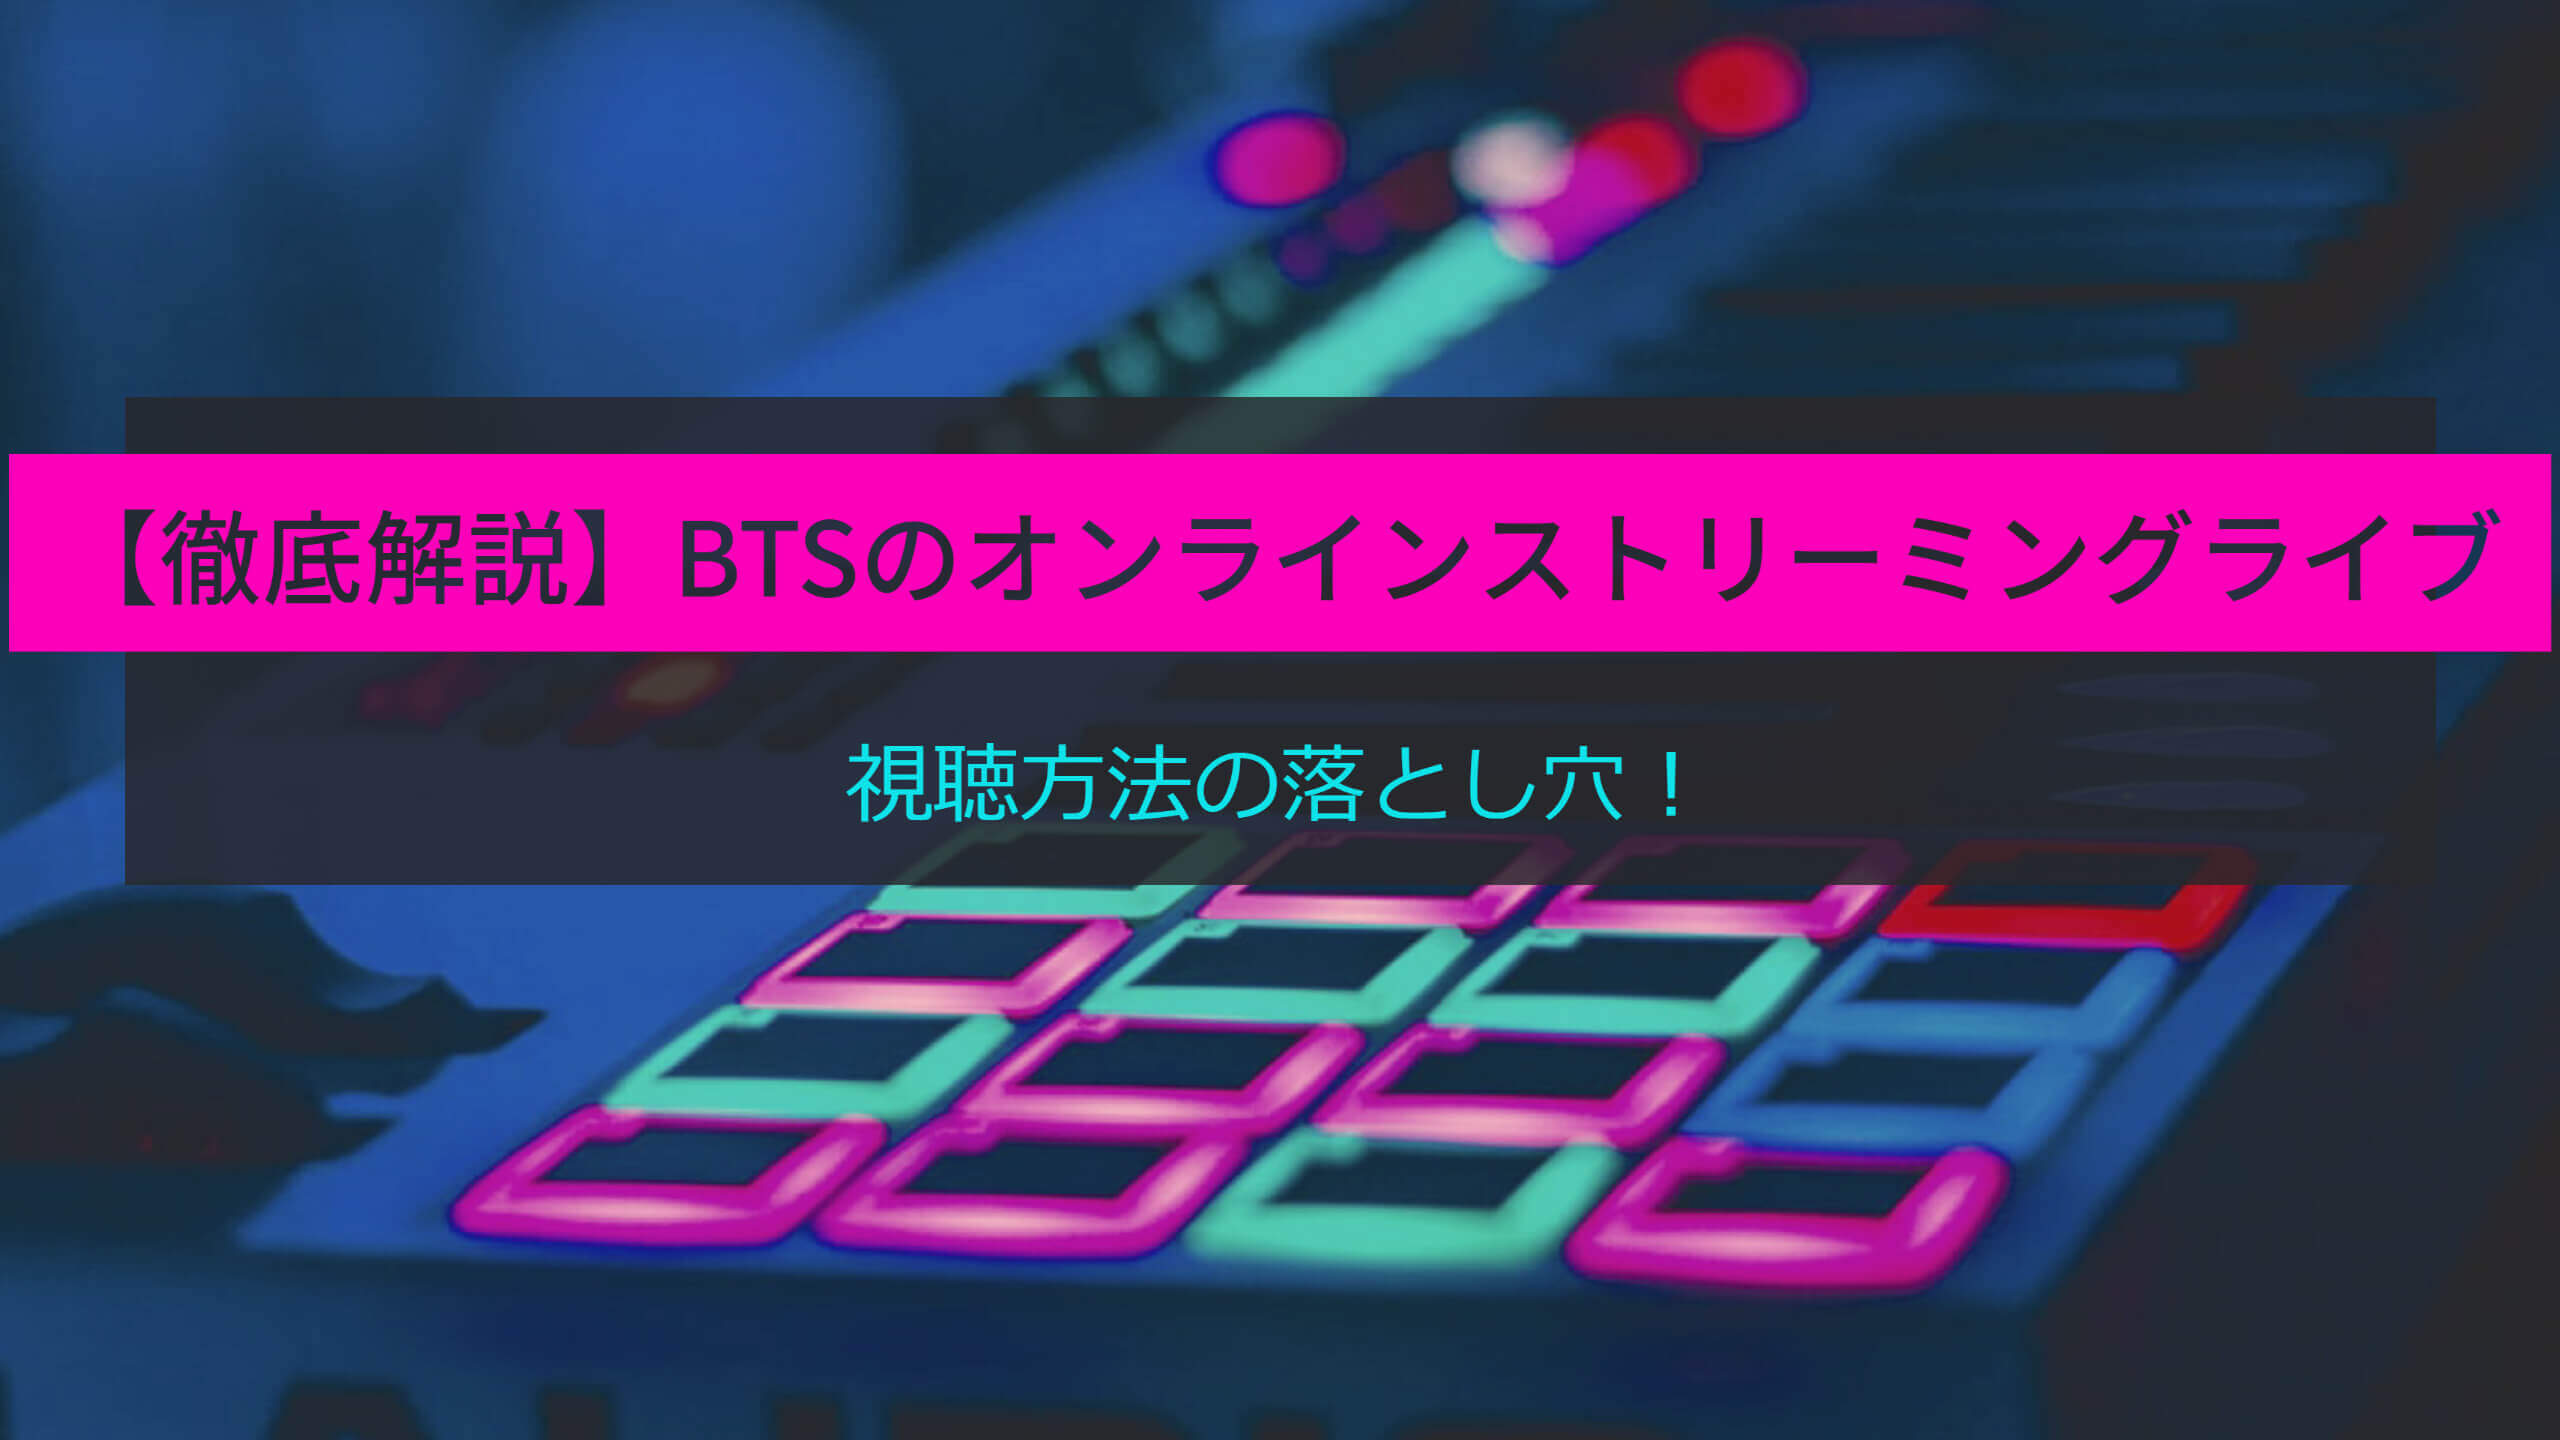 Bts オンライン ライブ 2022 テレビ で 見る 方法